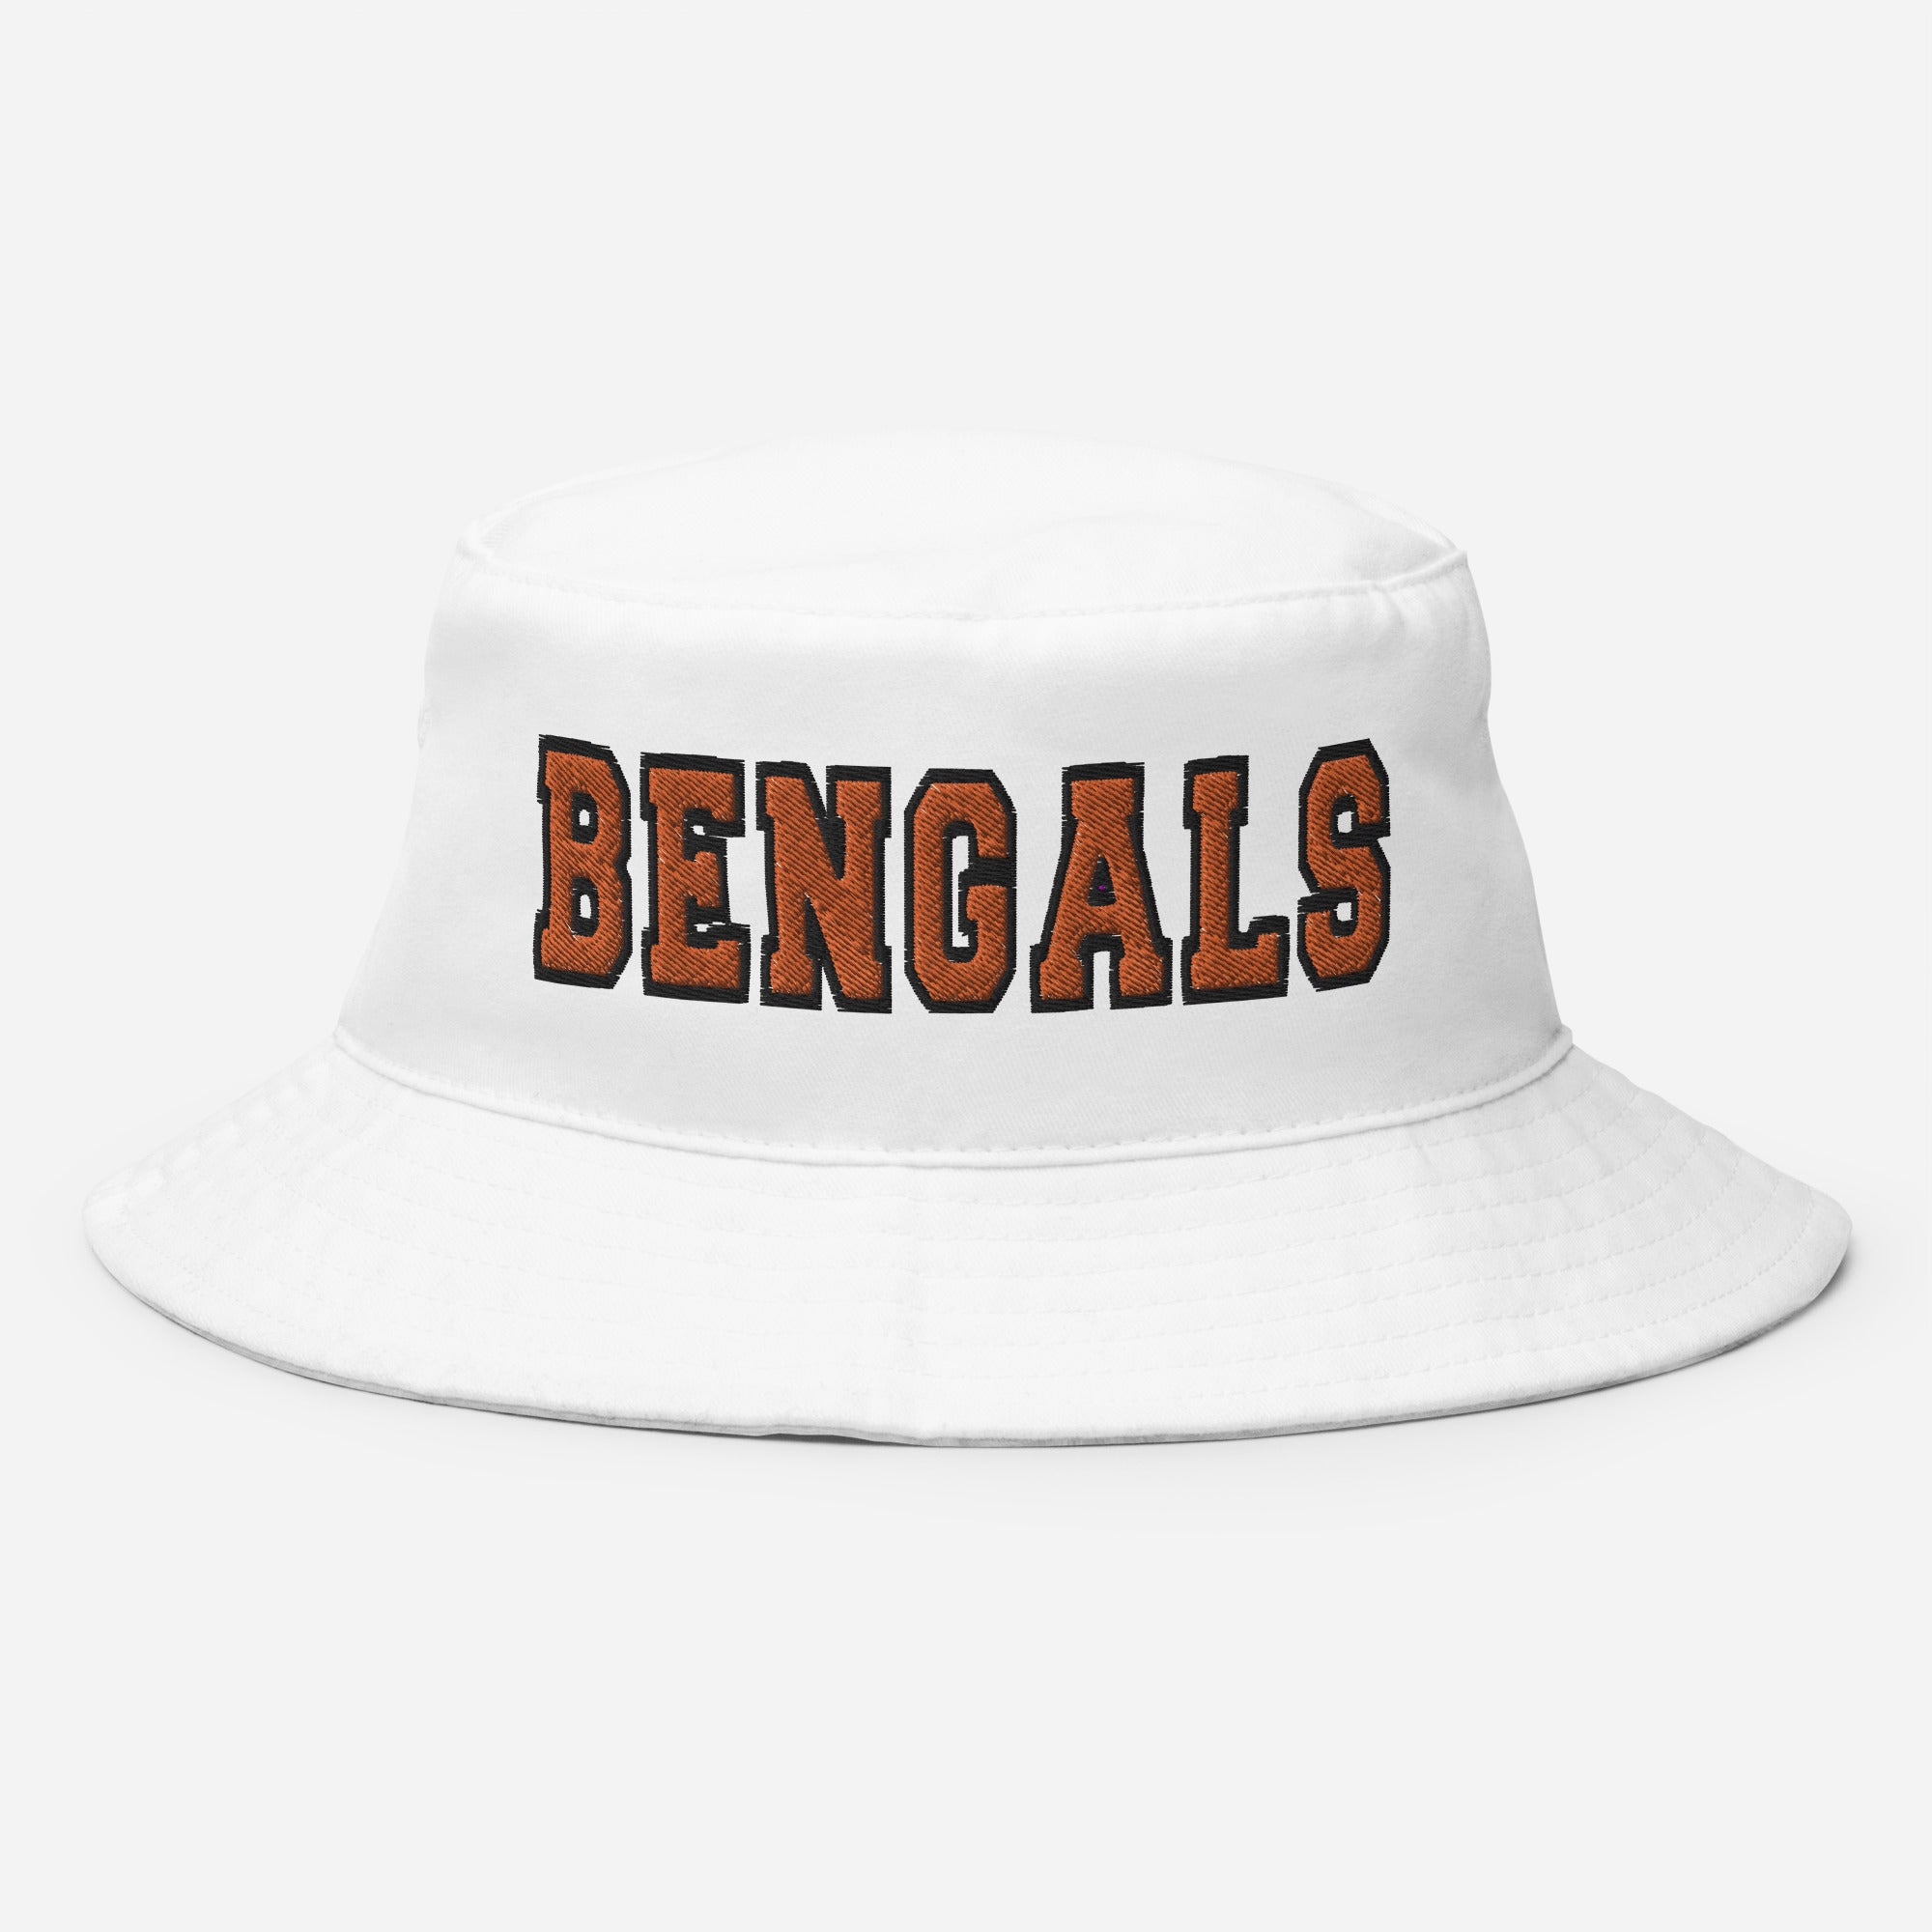 bengals training camp hat